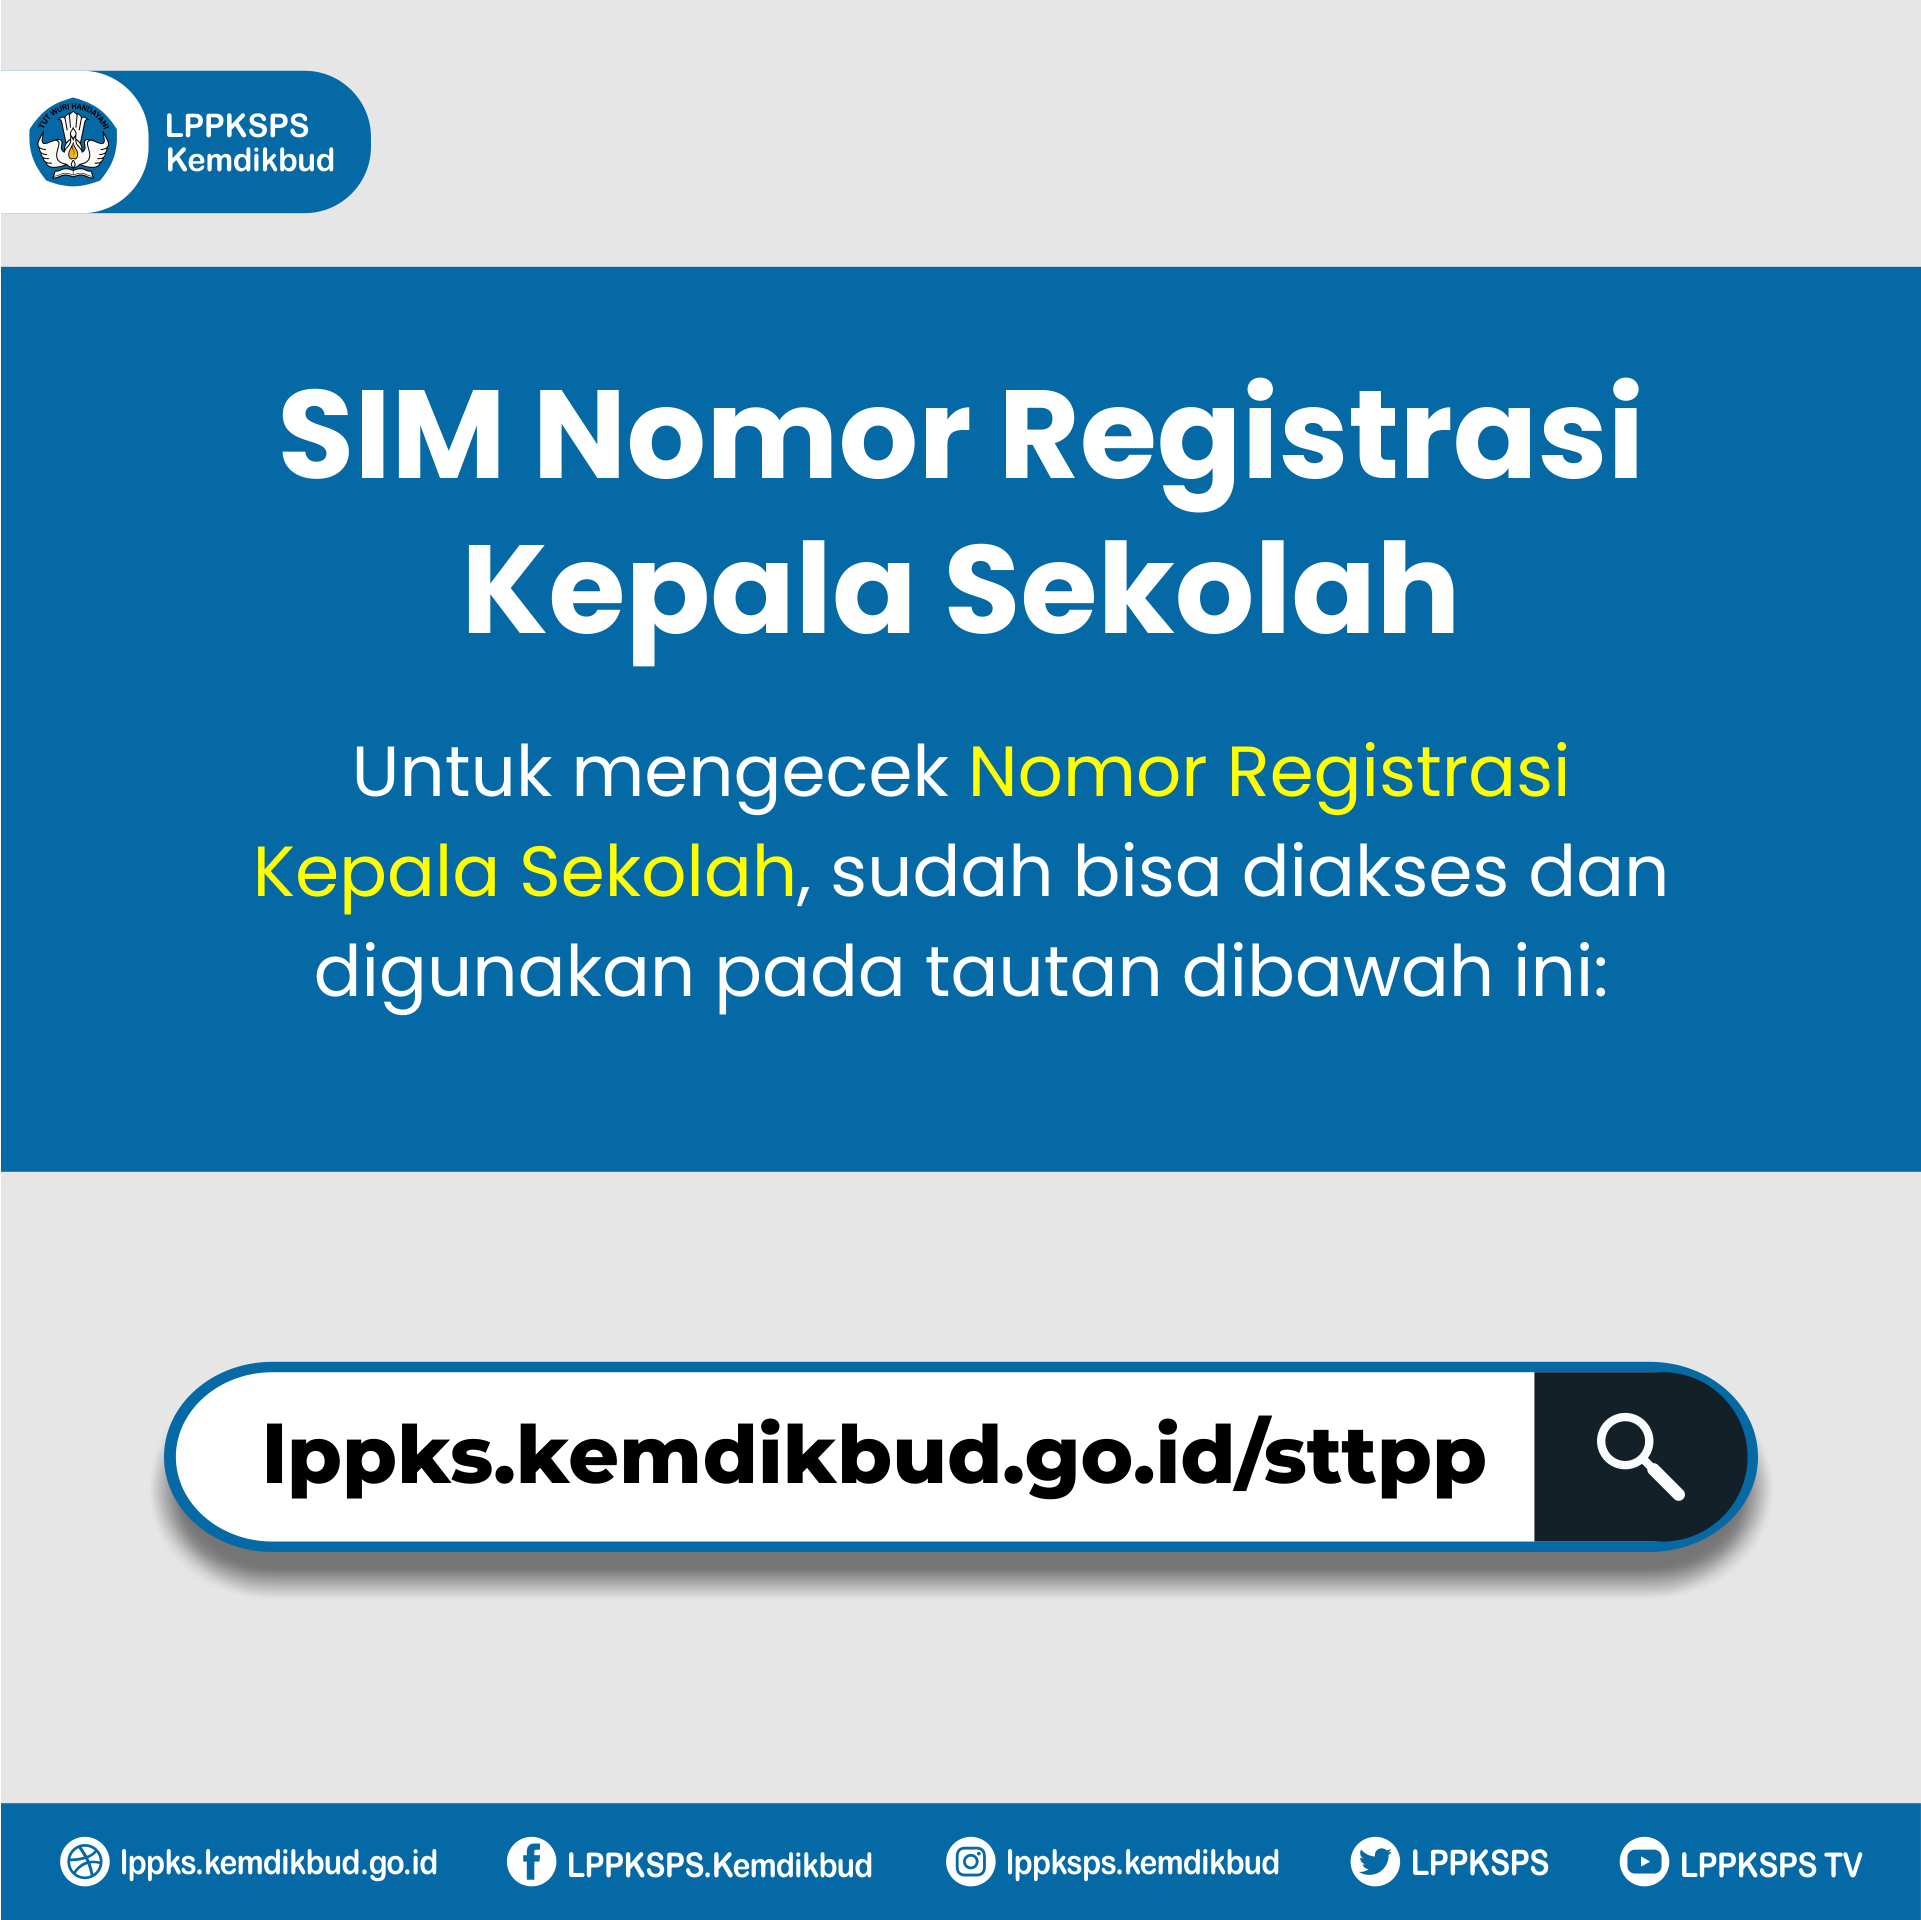 SIM Nomor Registrasi Kepala Sekolah Sudah Bisa Diakses dan Digunakan